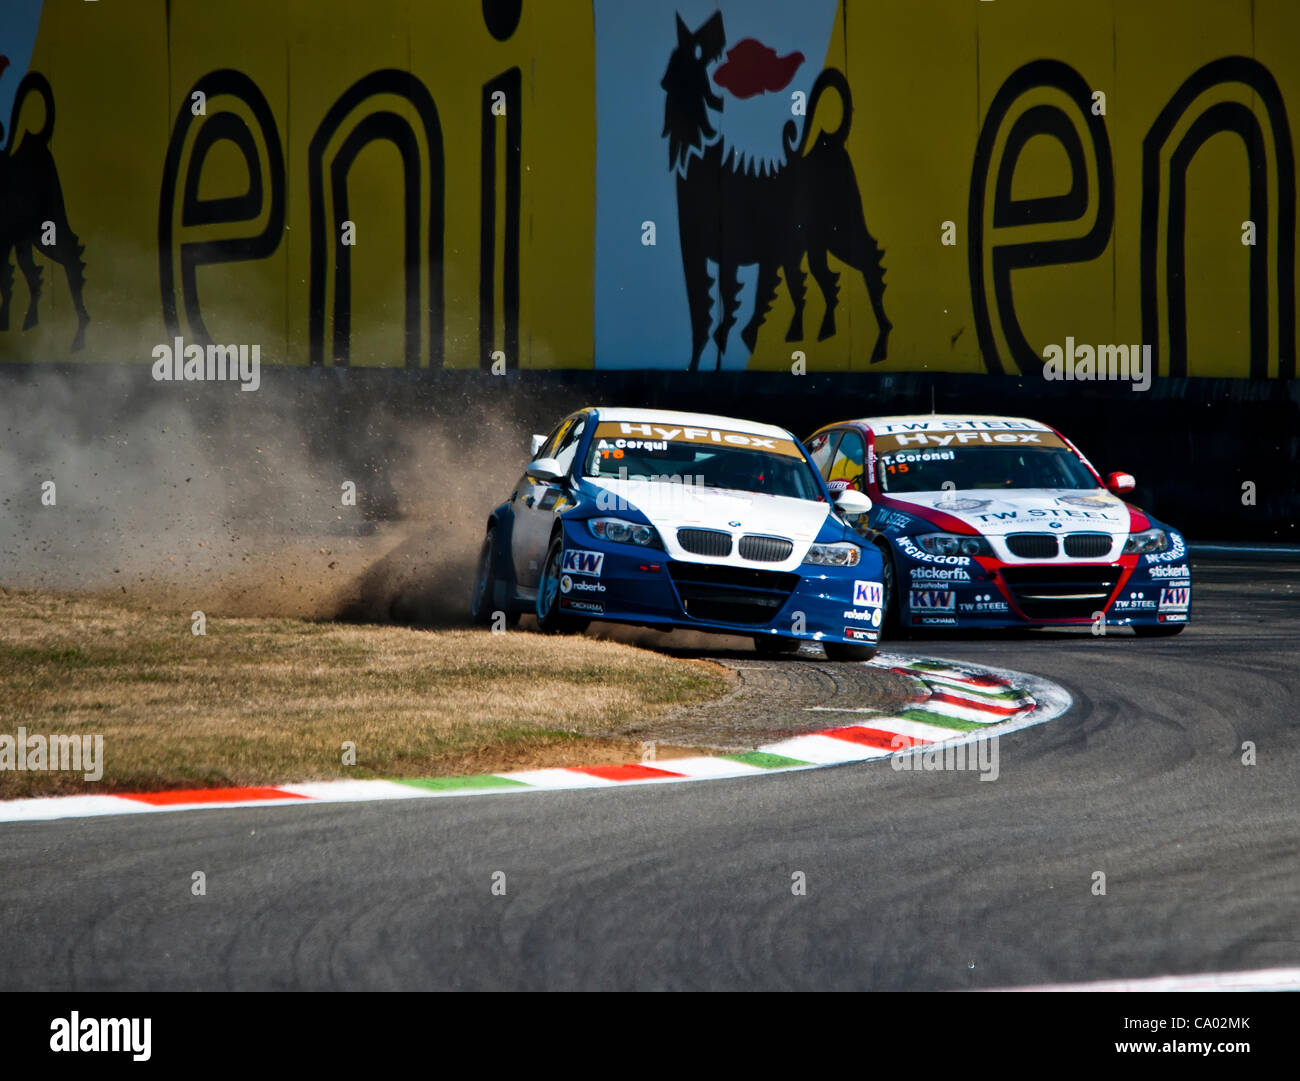 WTCC 2012  - Monza BMW battle between Cerqui and Coronel Stock Photo